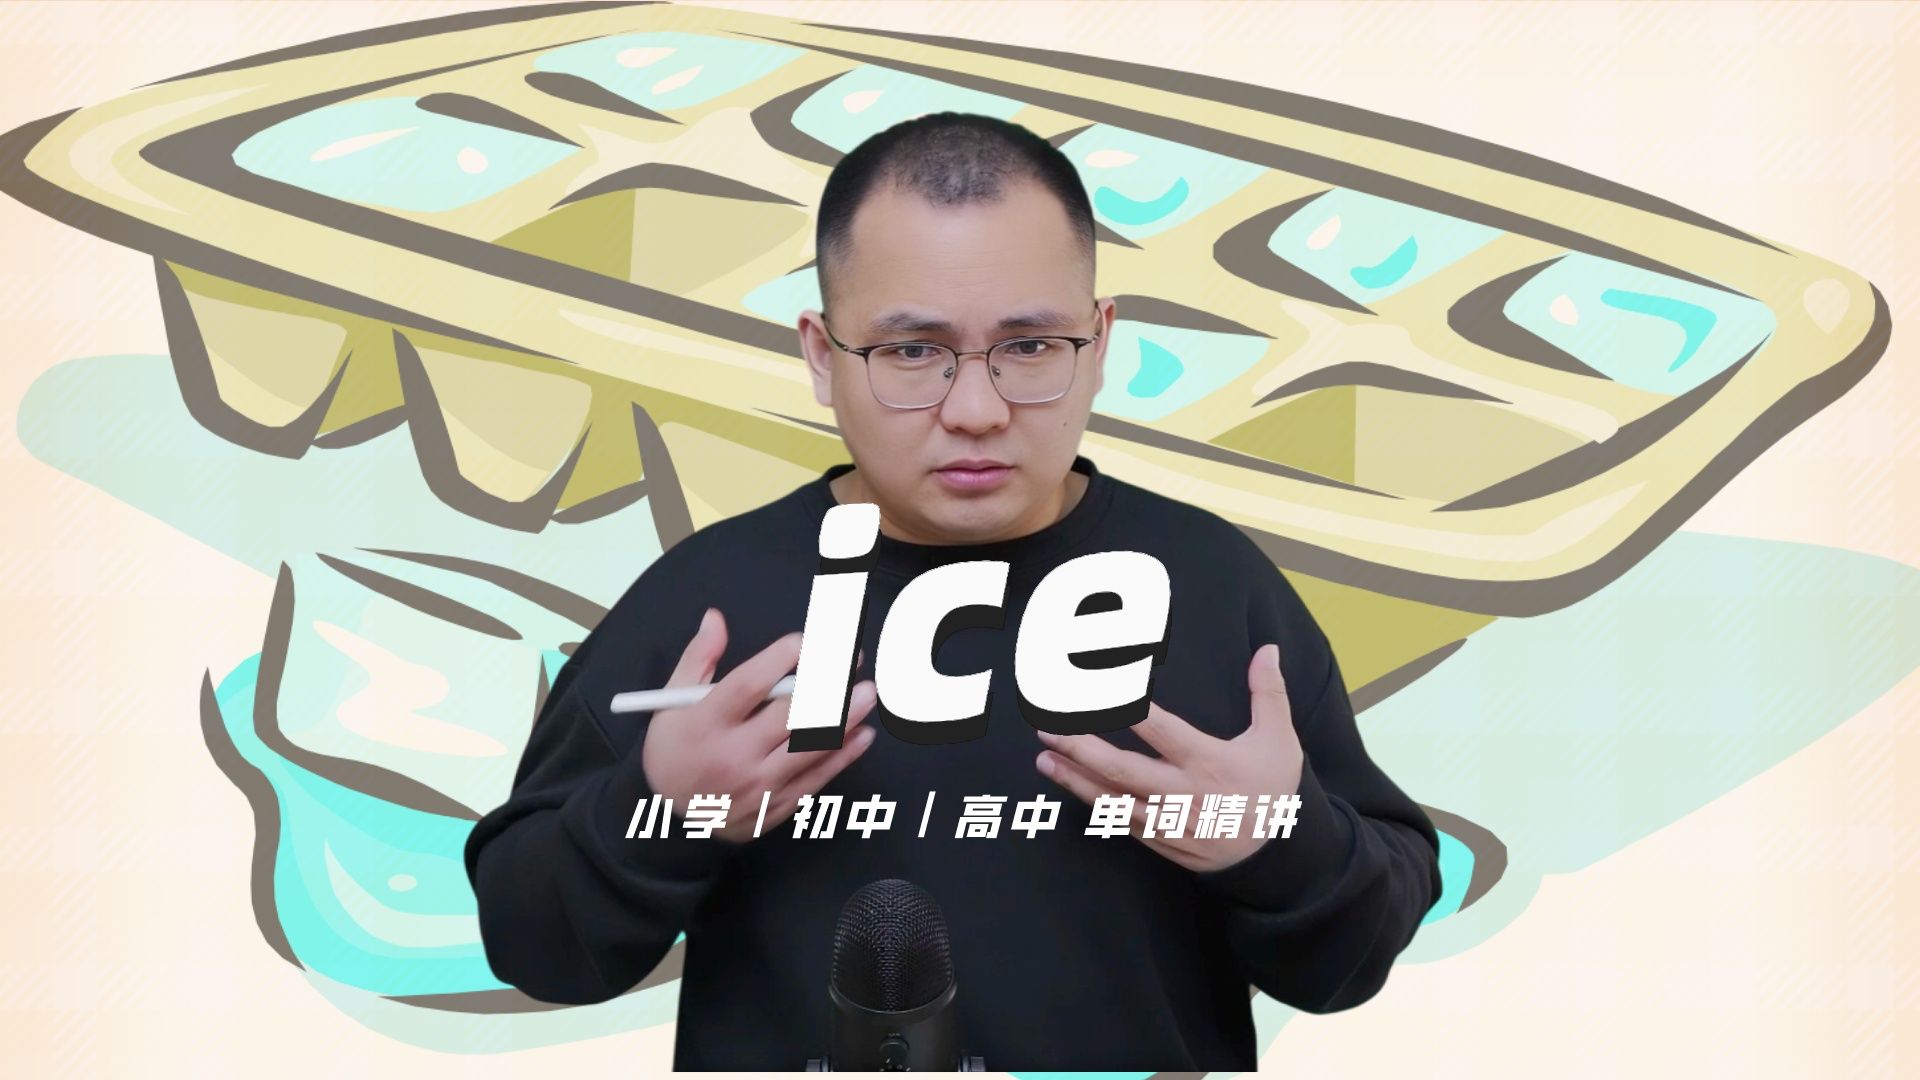 英语单词ice的中文意思是什么?